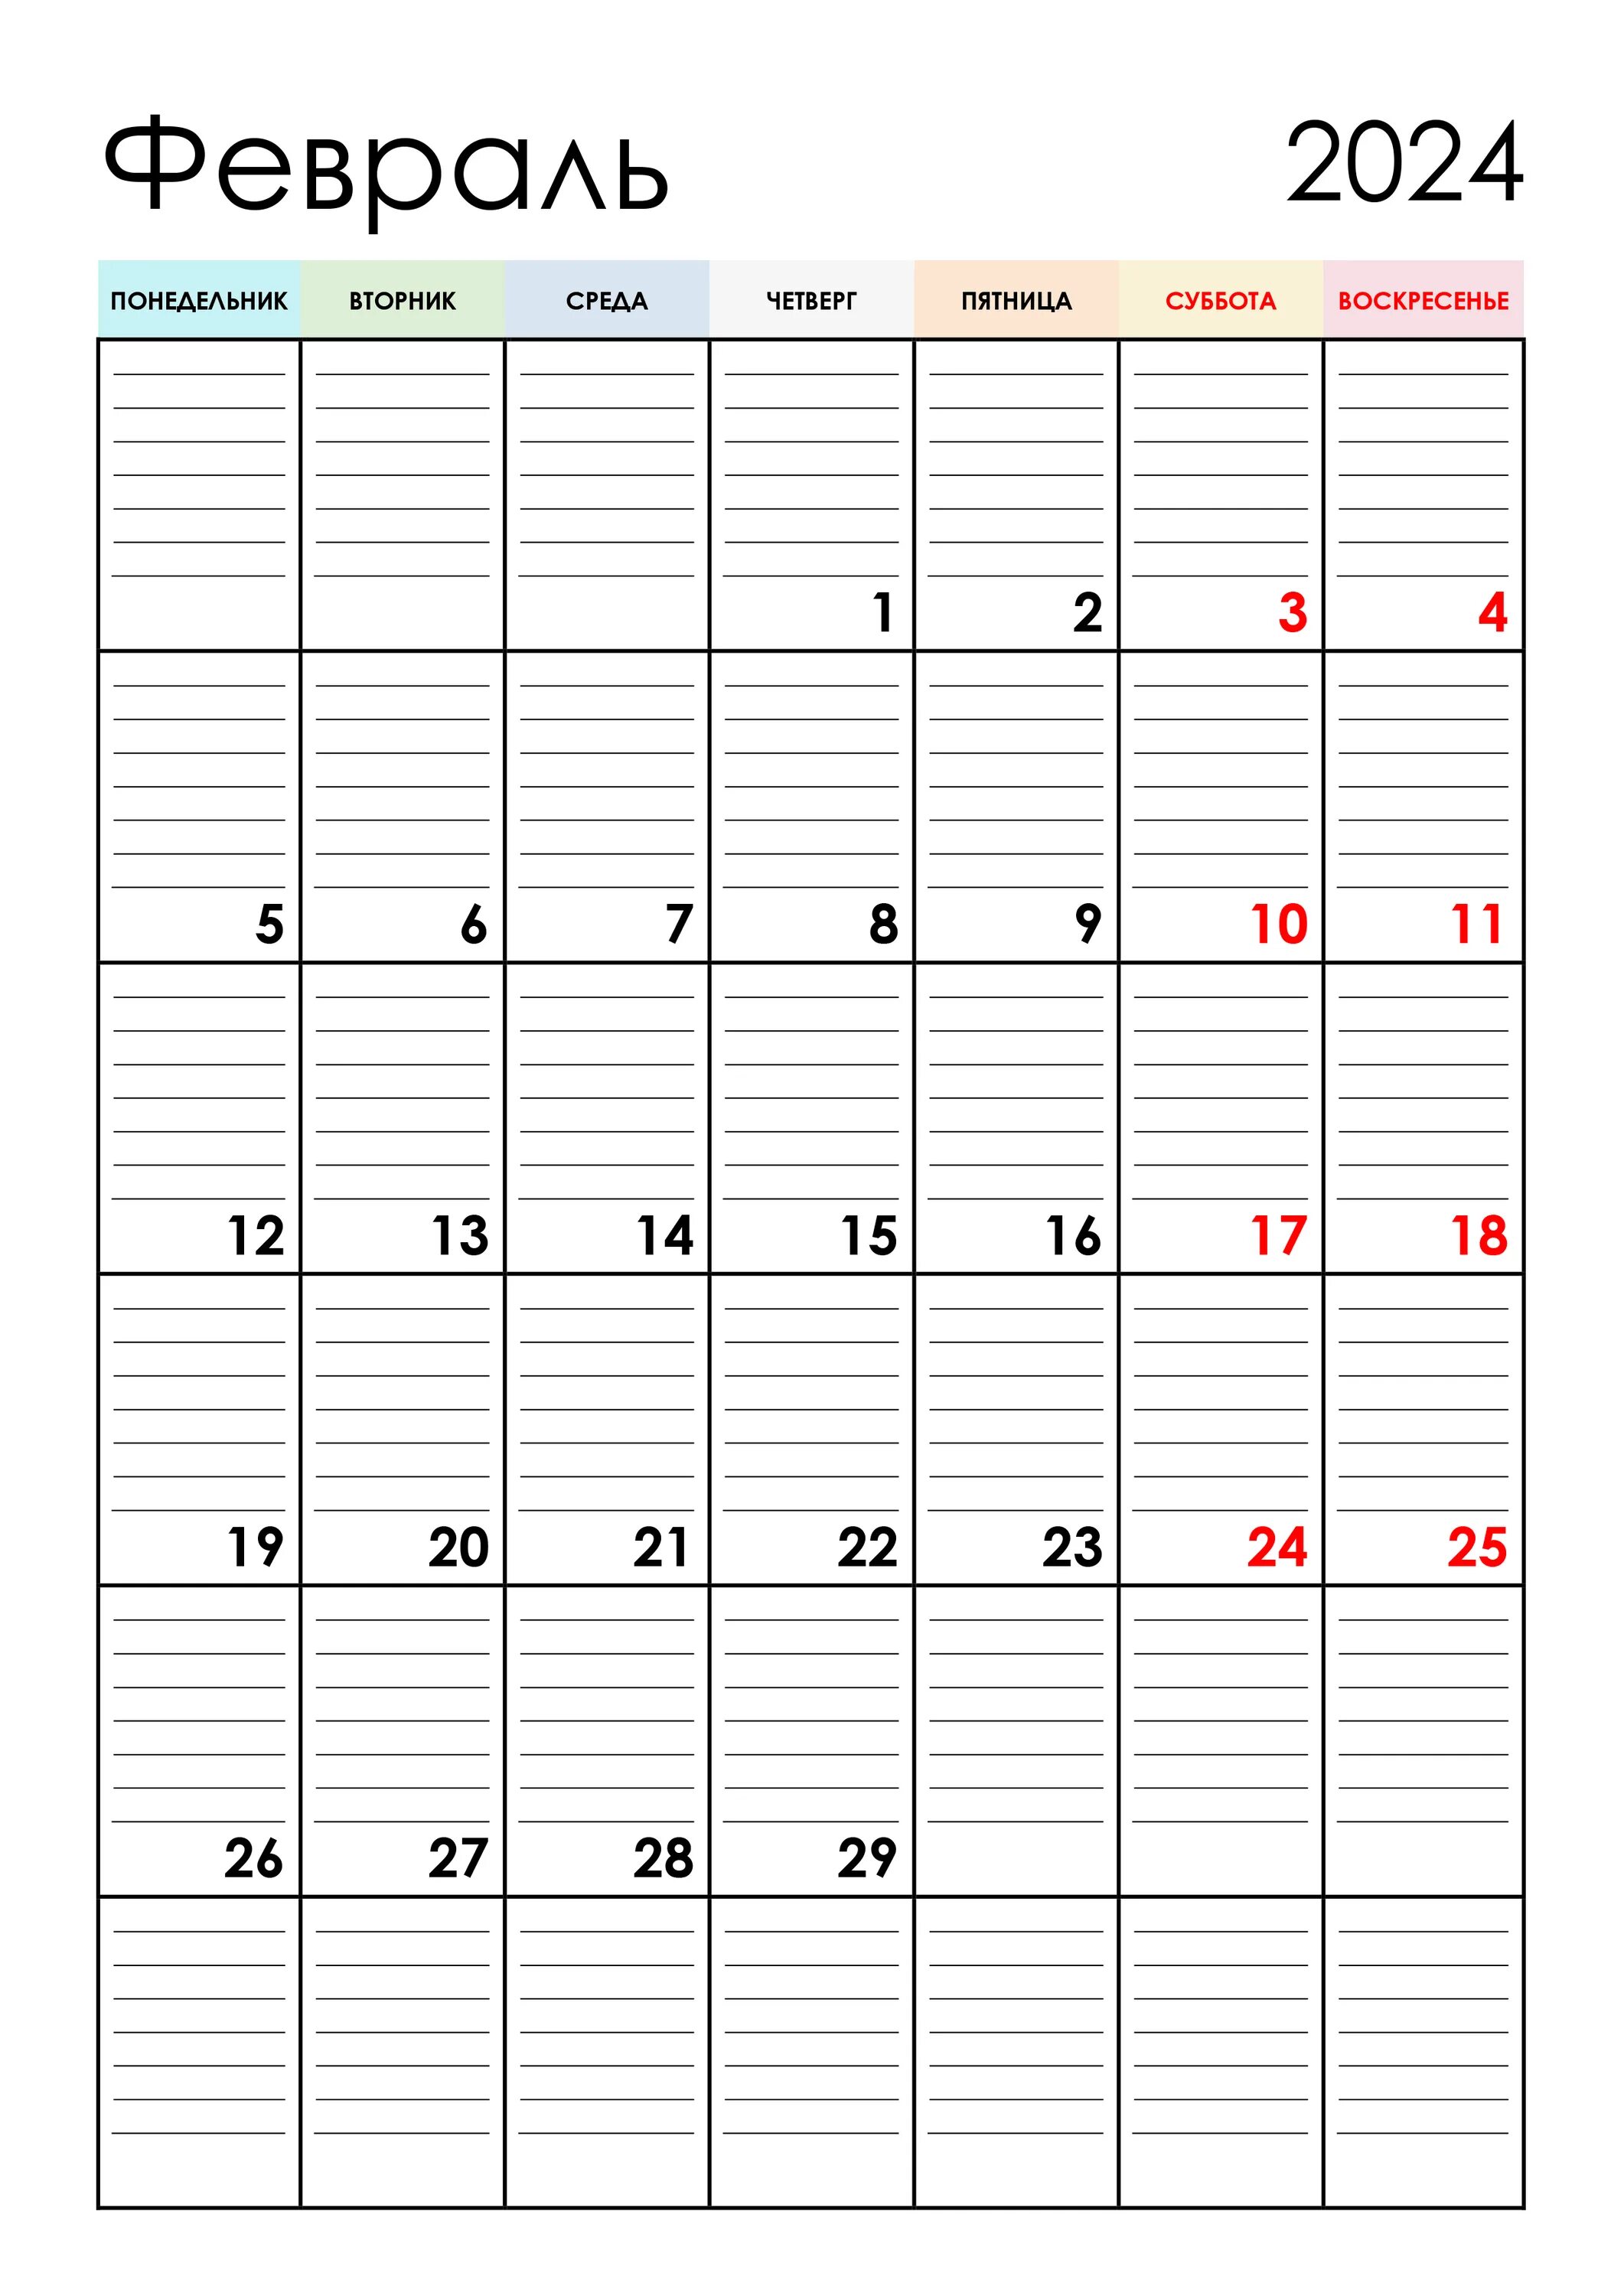 Календарь на май июнь 2024 года. Календарь планер август 2023. Календарь планер на декабрь 2022 год. Календарь планер май июнь 2023. Календарь планер на июнь 2023 года.